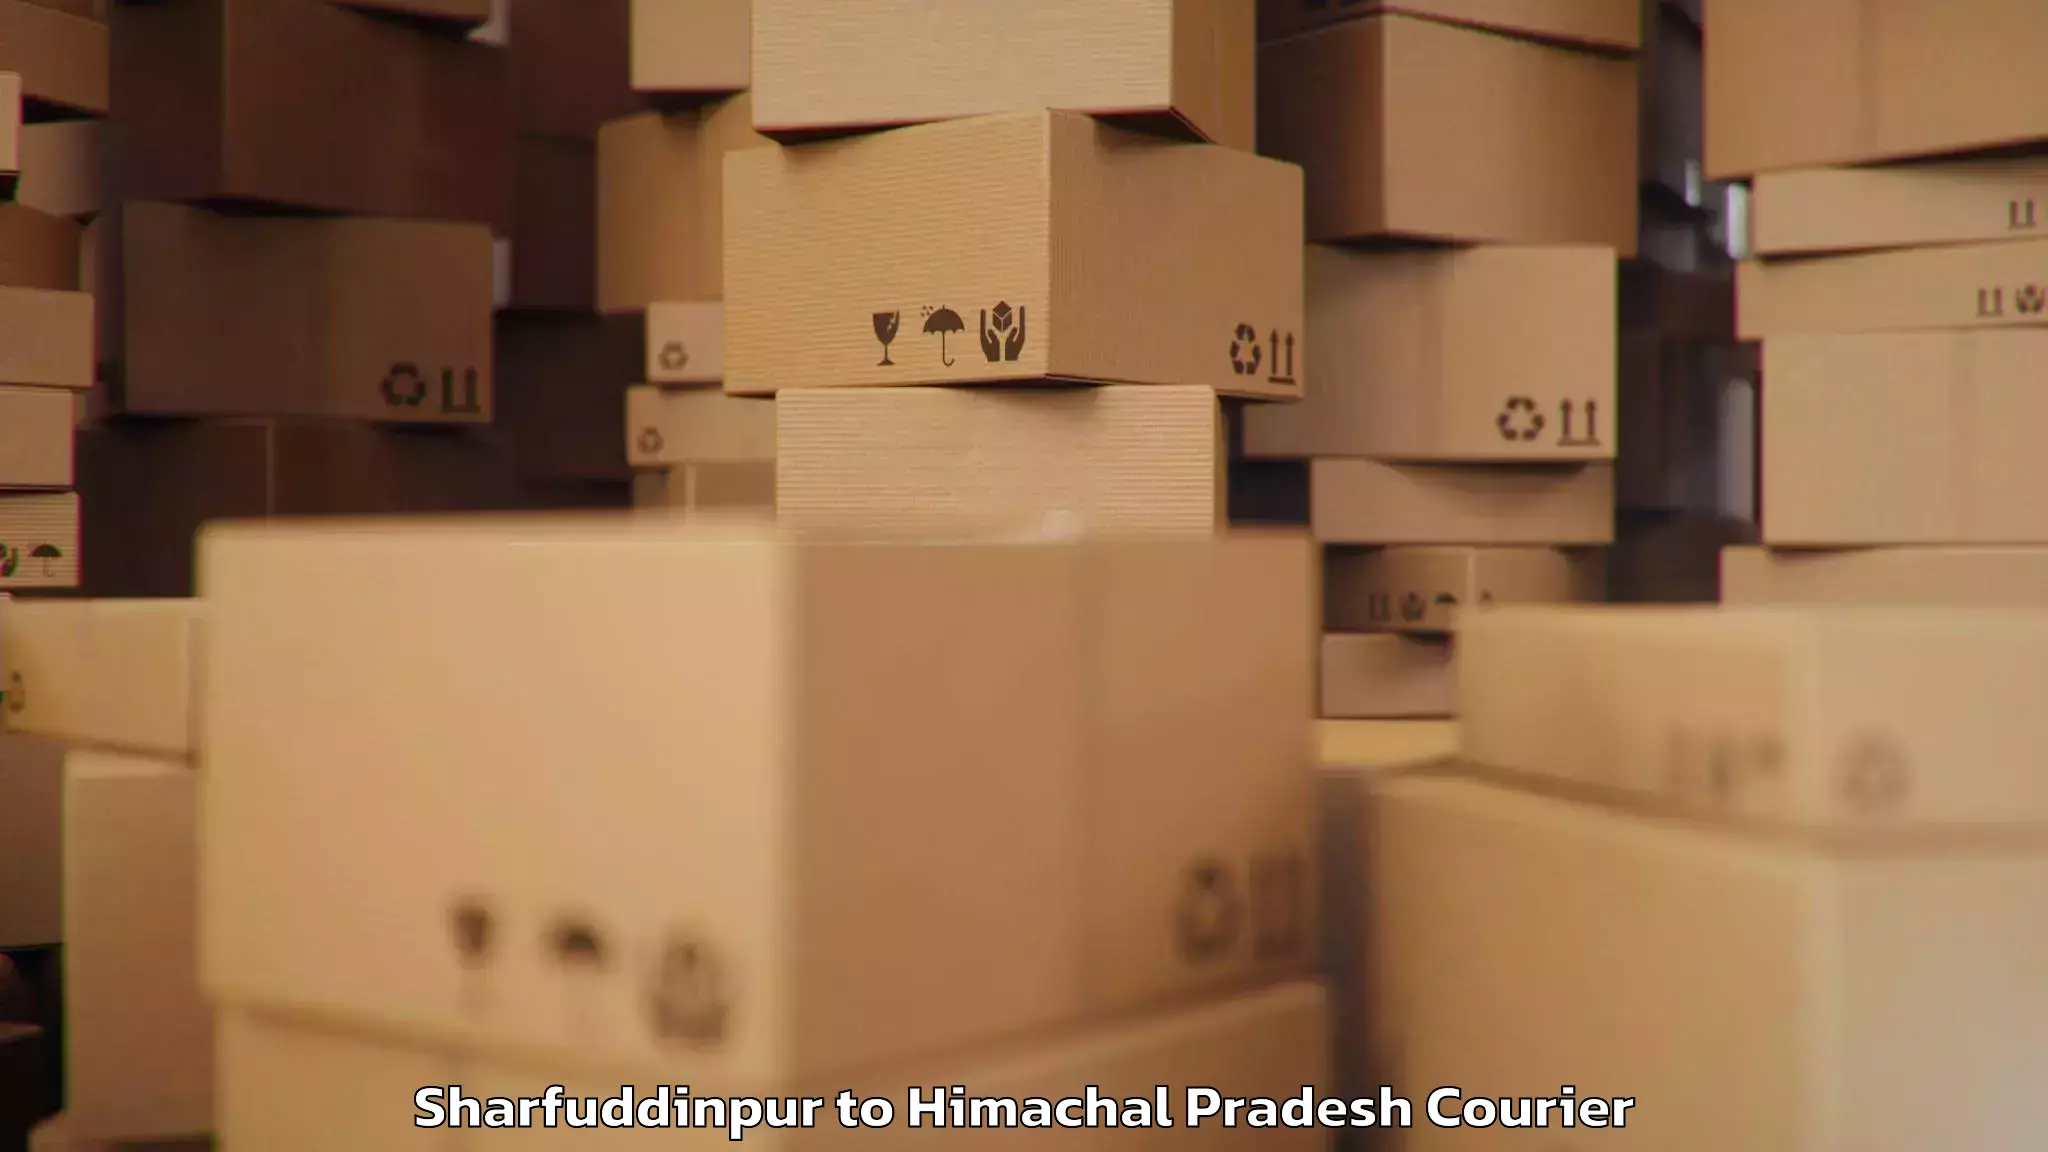 Personal effects shipping Sharfuddinpur to Suni Shimla